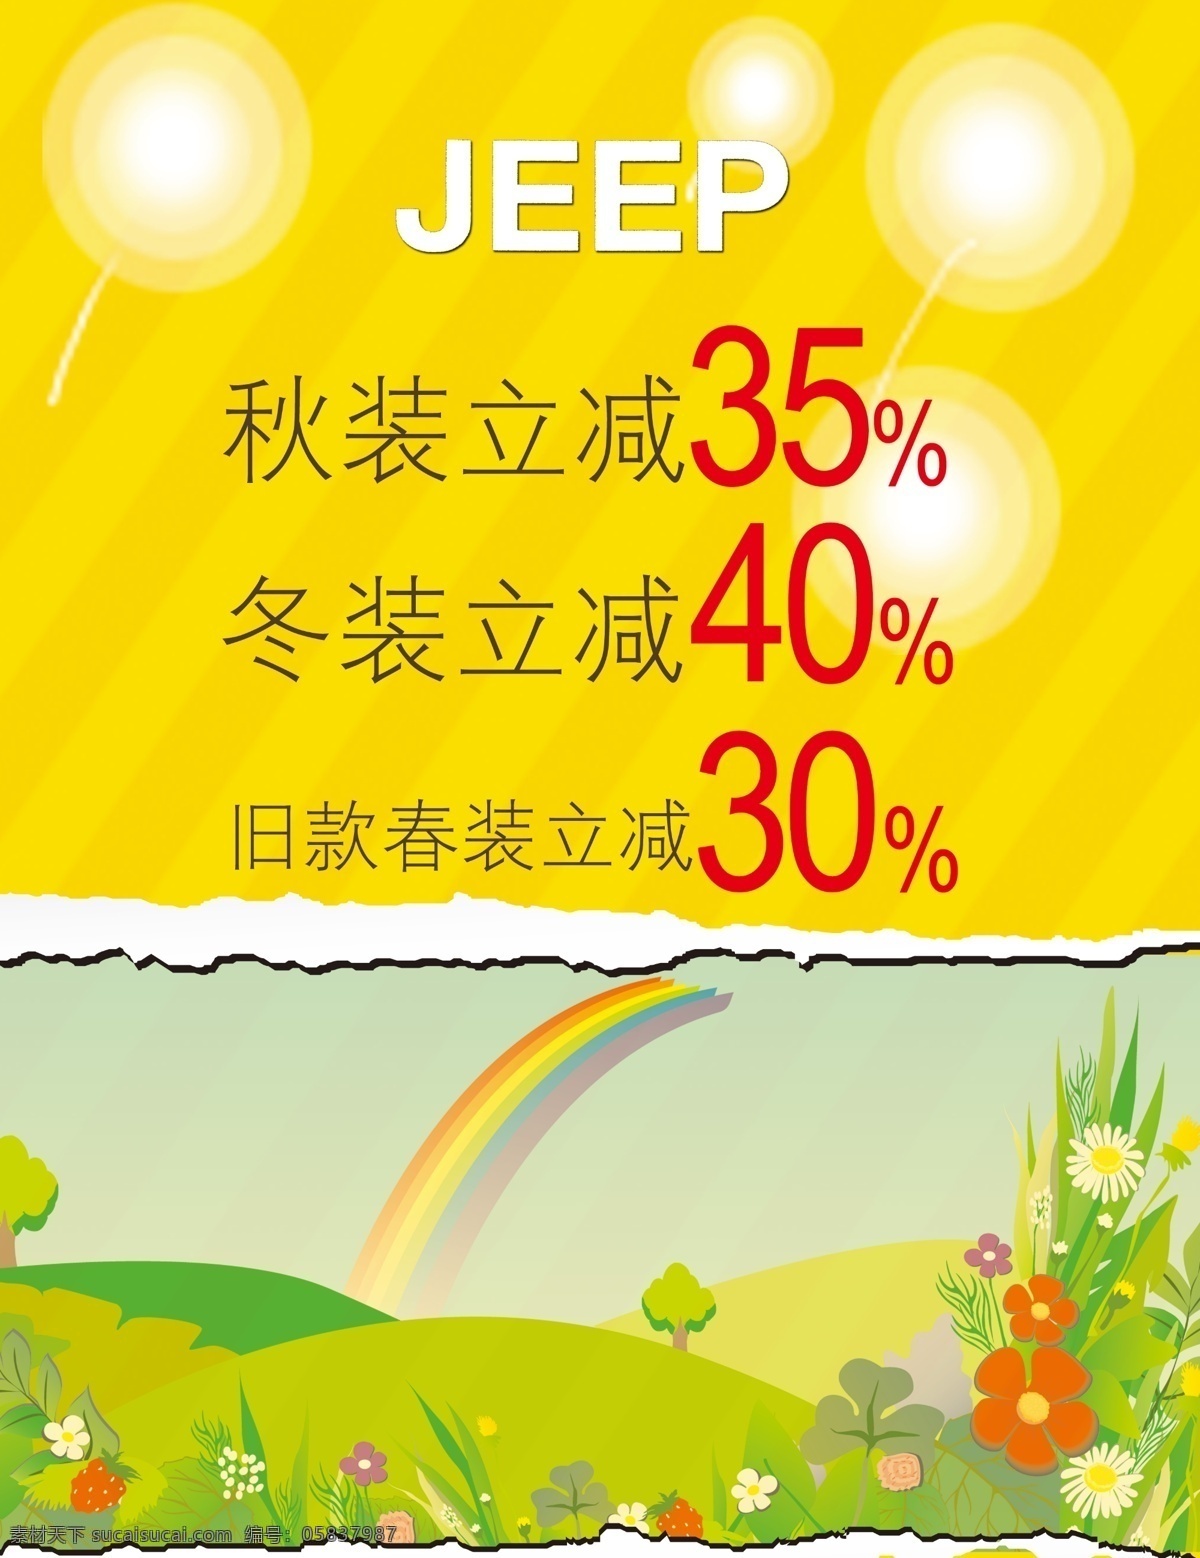 jeep海报 jeep 海报 欢乐 彩虹 小花 绿色底 黄色底 立减 广告设计模板 源文件